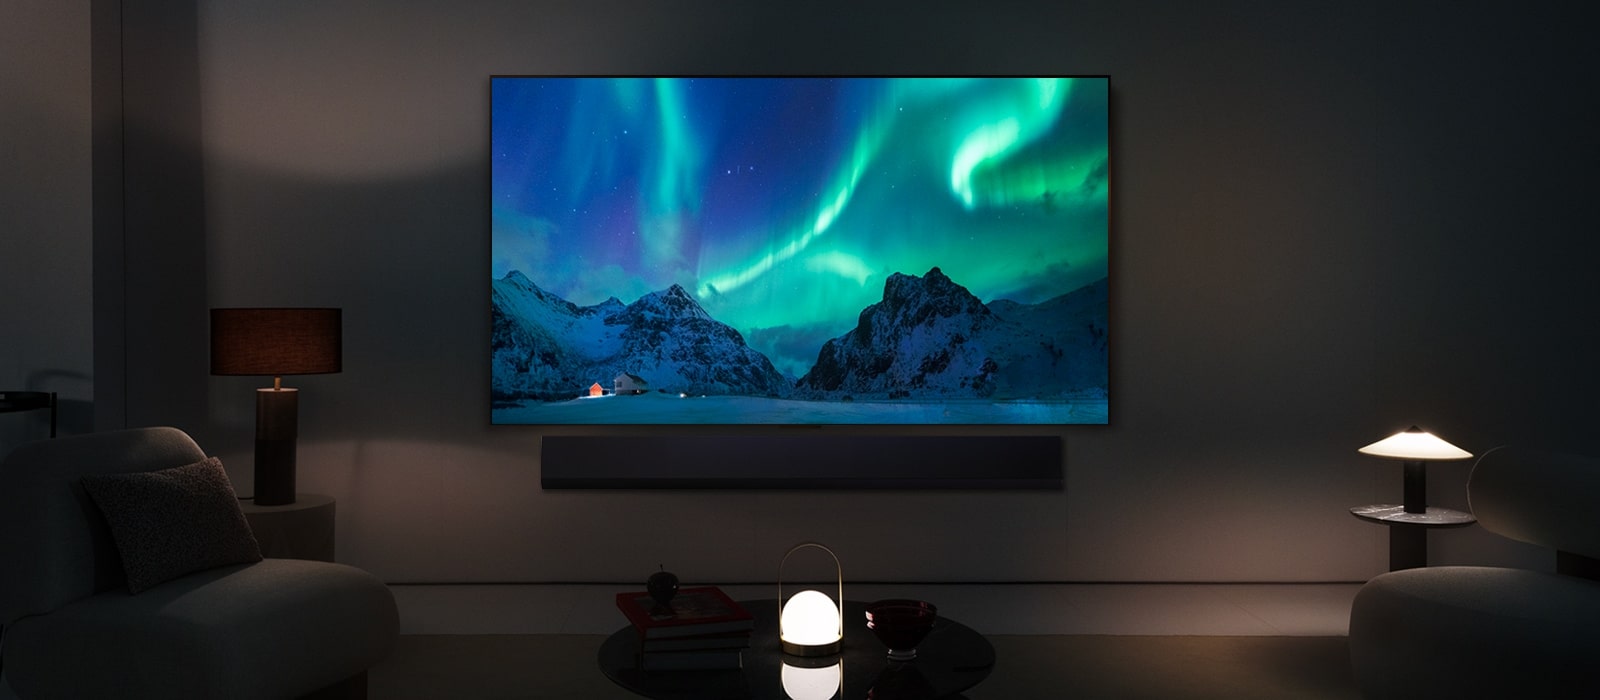 Le téléviseur OLED de LG et la barre de son de LG dans une pièce moderne la nuit. Des aurores boréales s’affichent à l’écran avec les niveaux de luminosité idéaux.